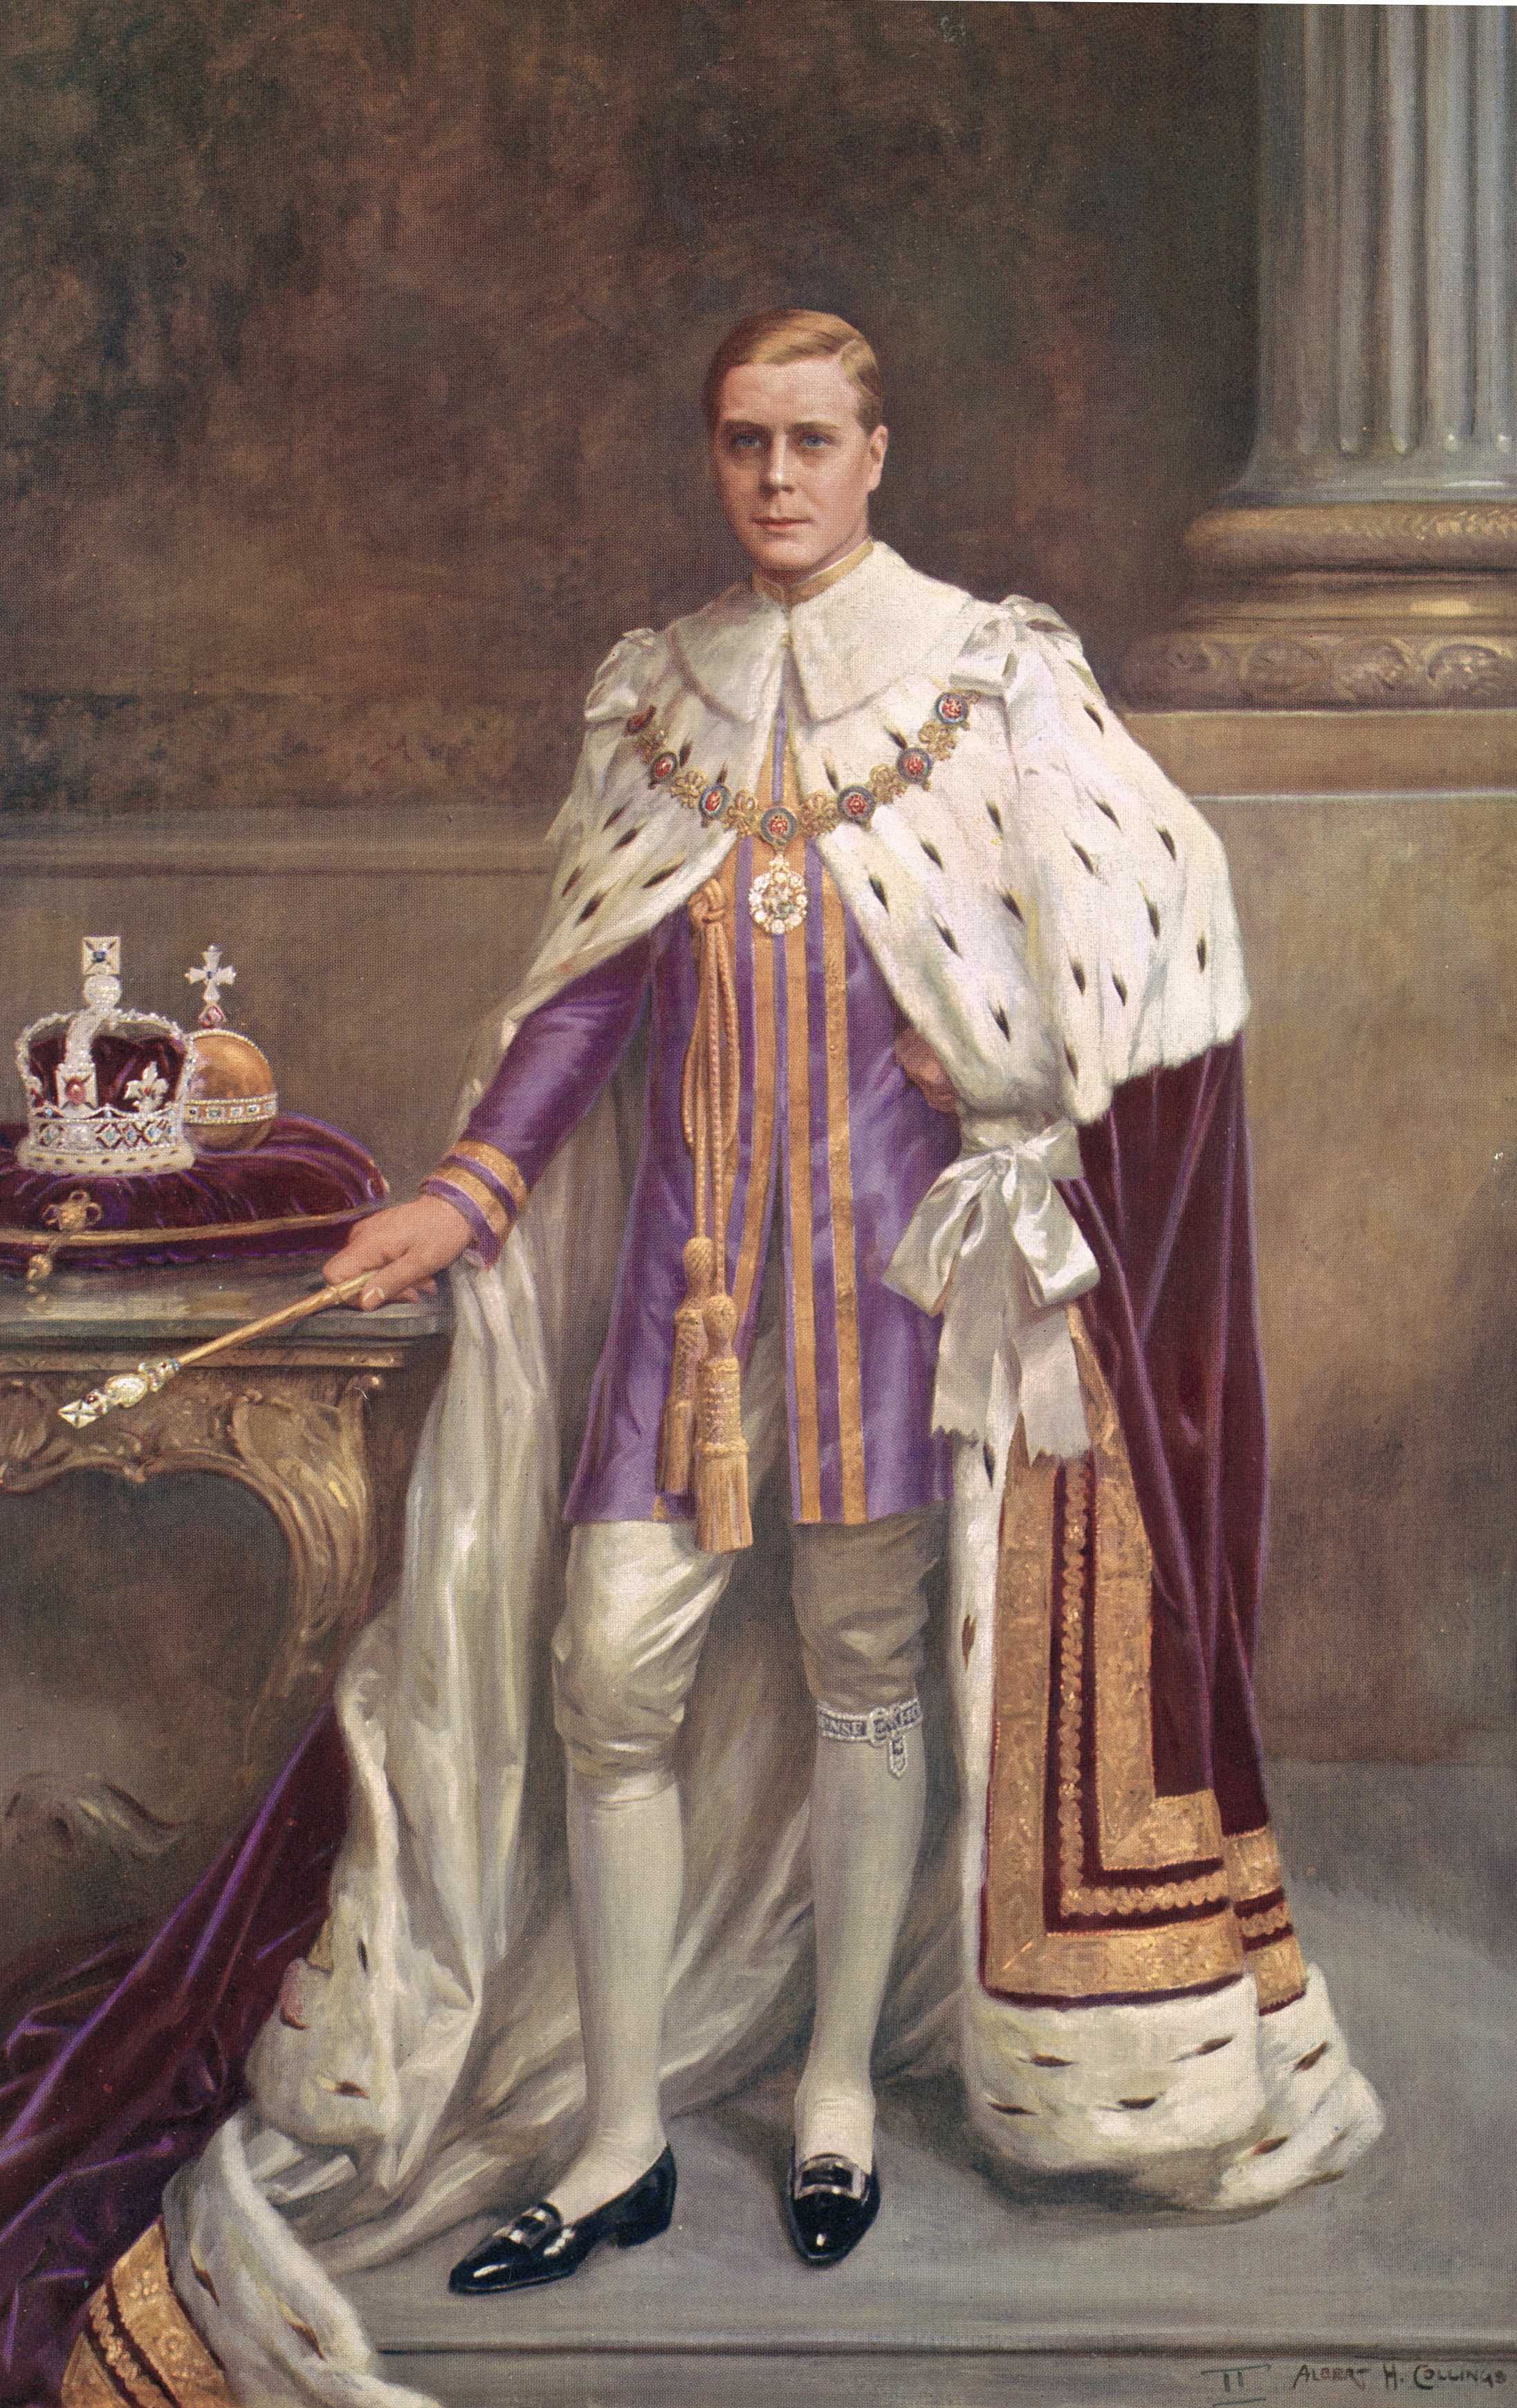 Royal photoshop - King Edward VIII Coronation Robes